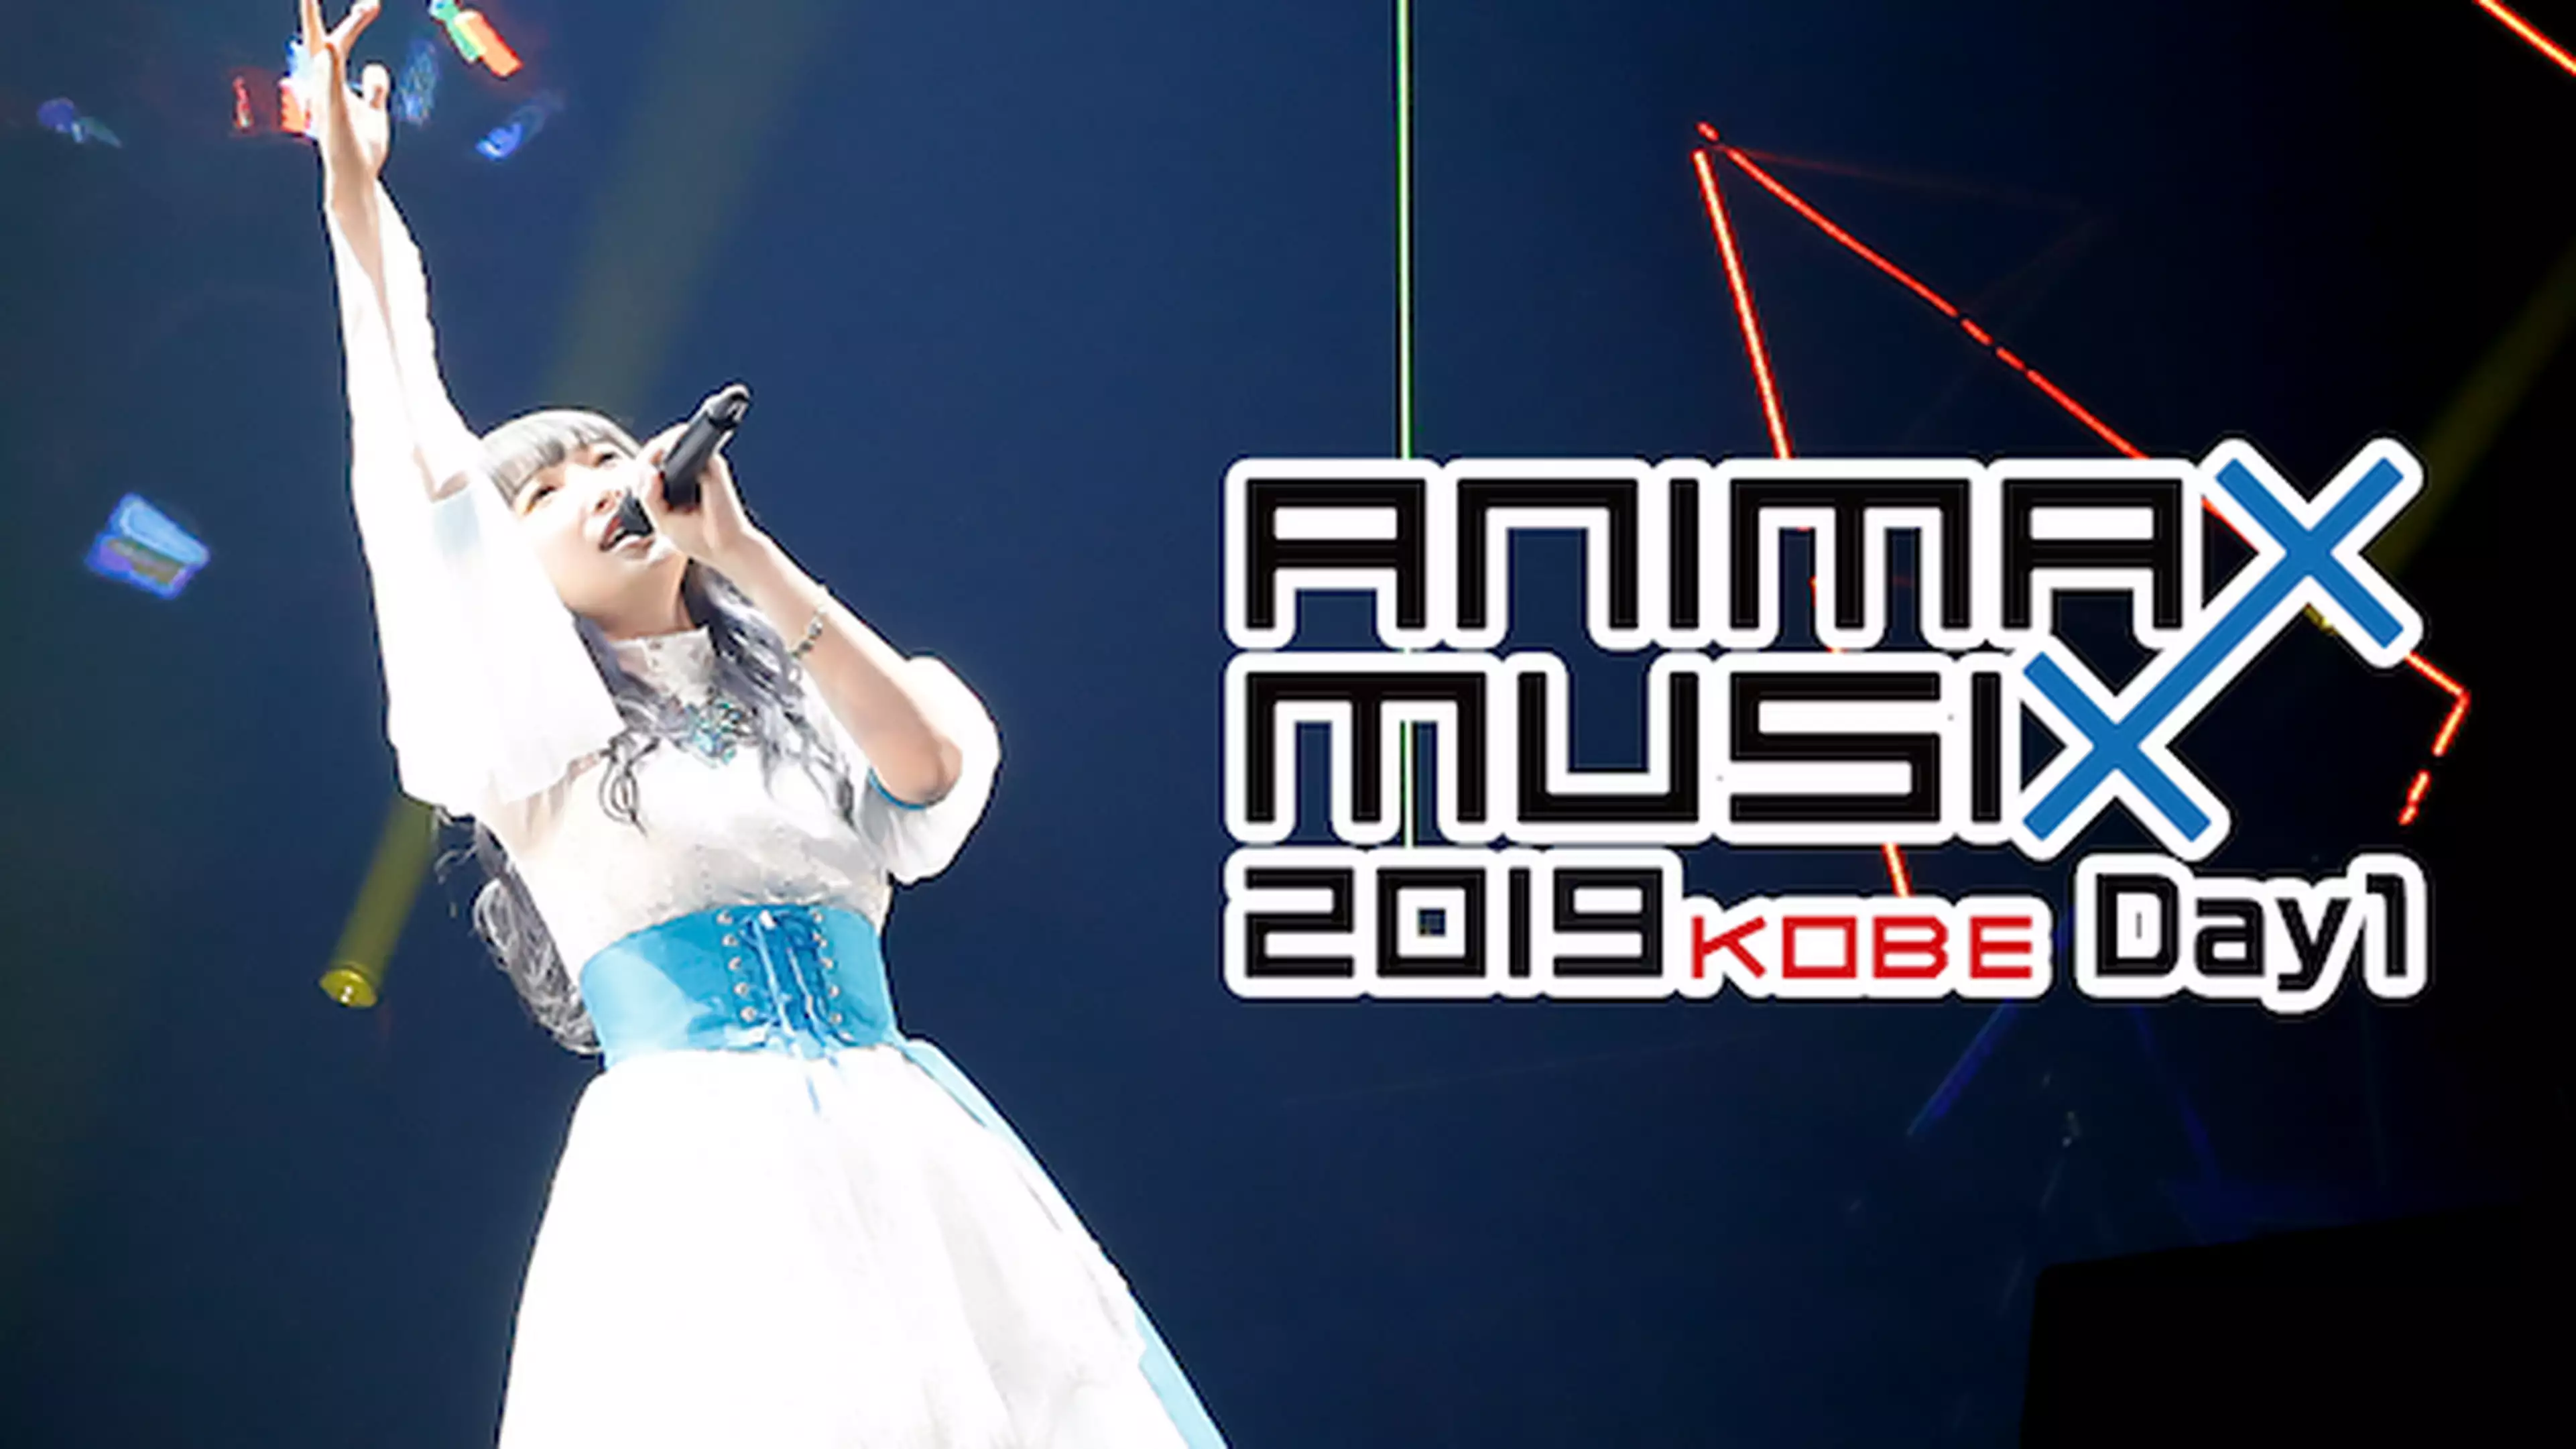 Animax Musix 19 Kobe Day1 クローバー かくめーしょん Machico Run Girls Run 音楽 アイドル 19年 の動画視聴 あらすじ U Next